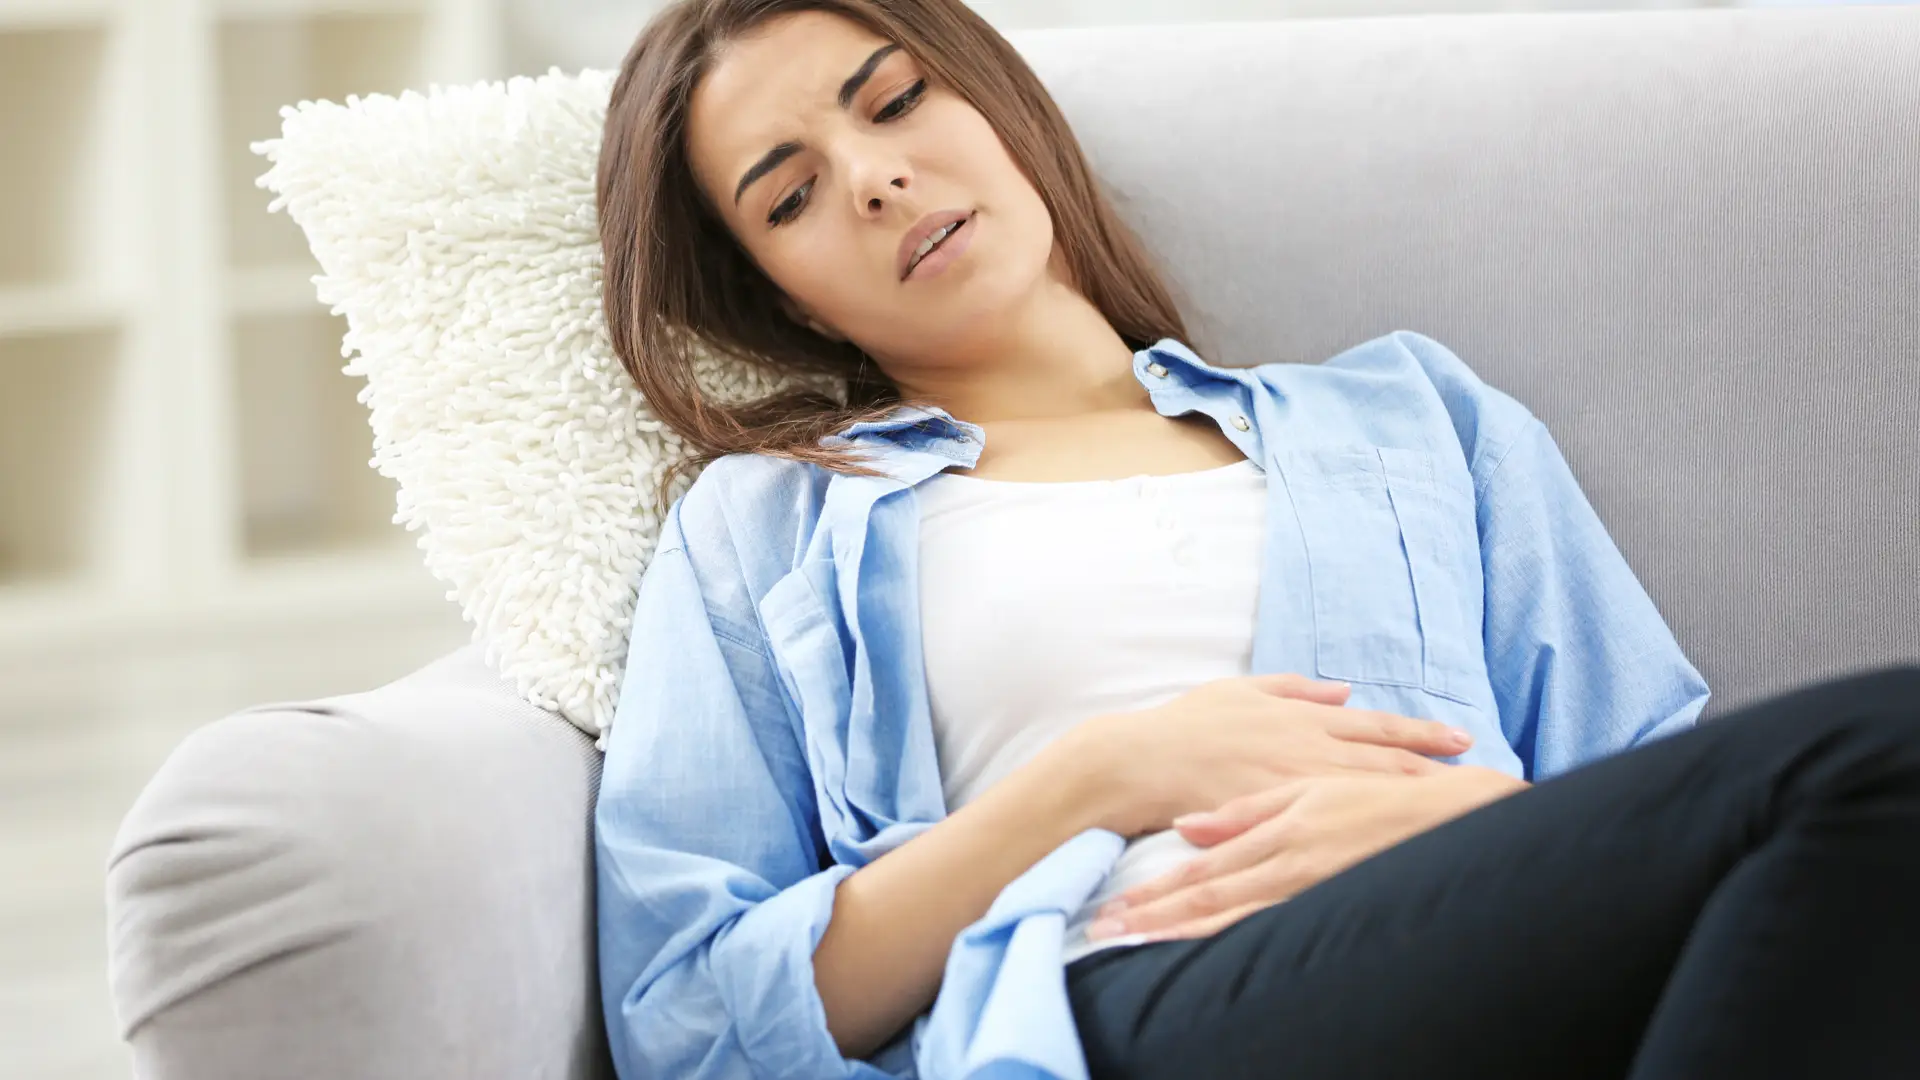 Dolor de regla o embarazo: sólo puedes estar segura con un test de embarazo